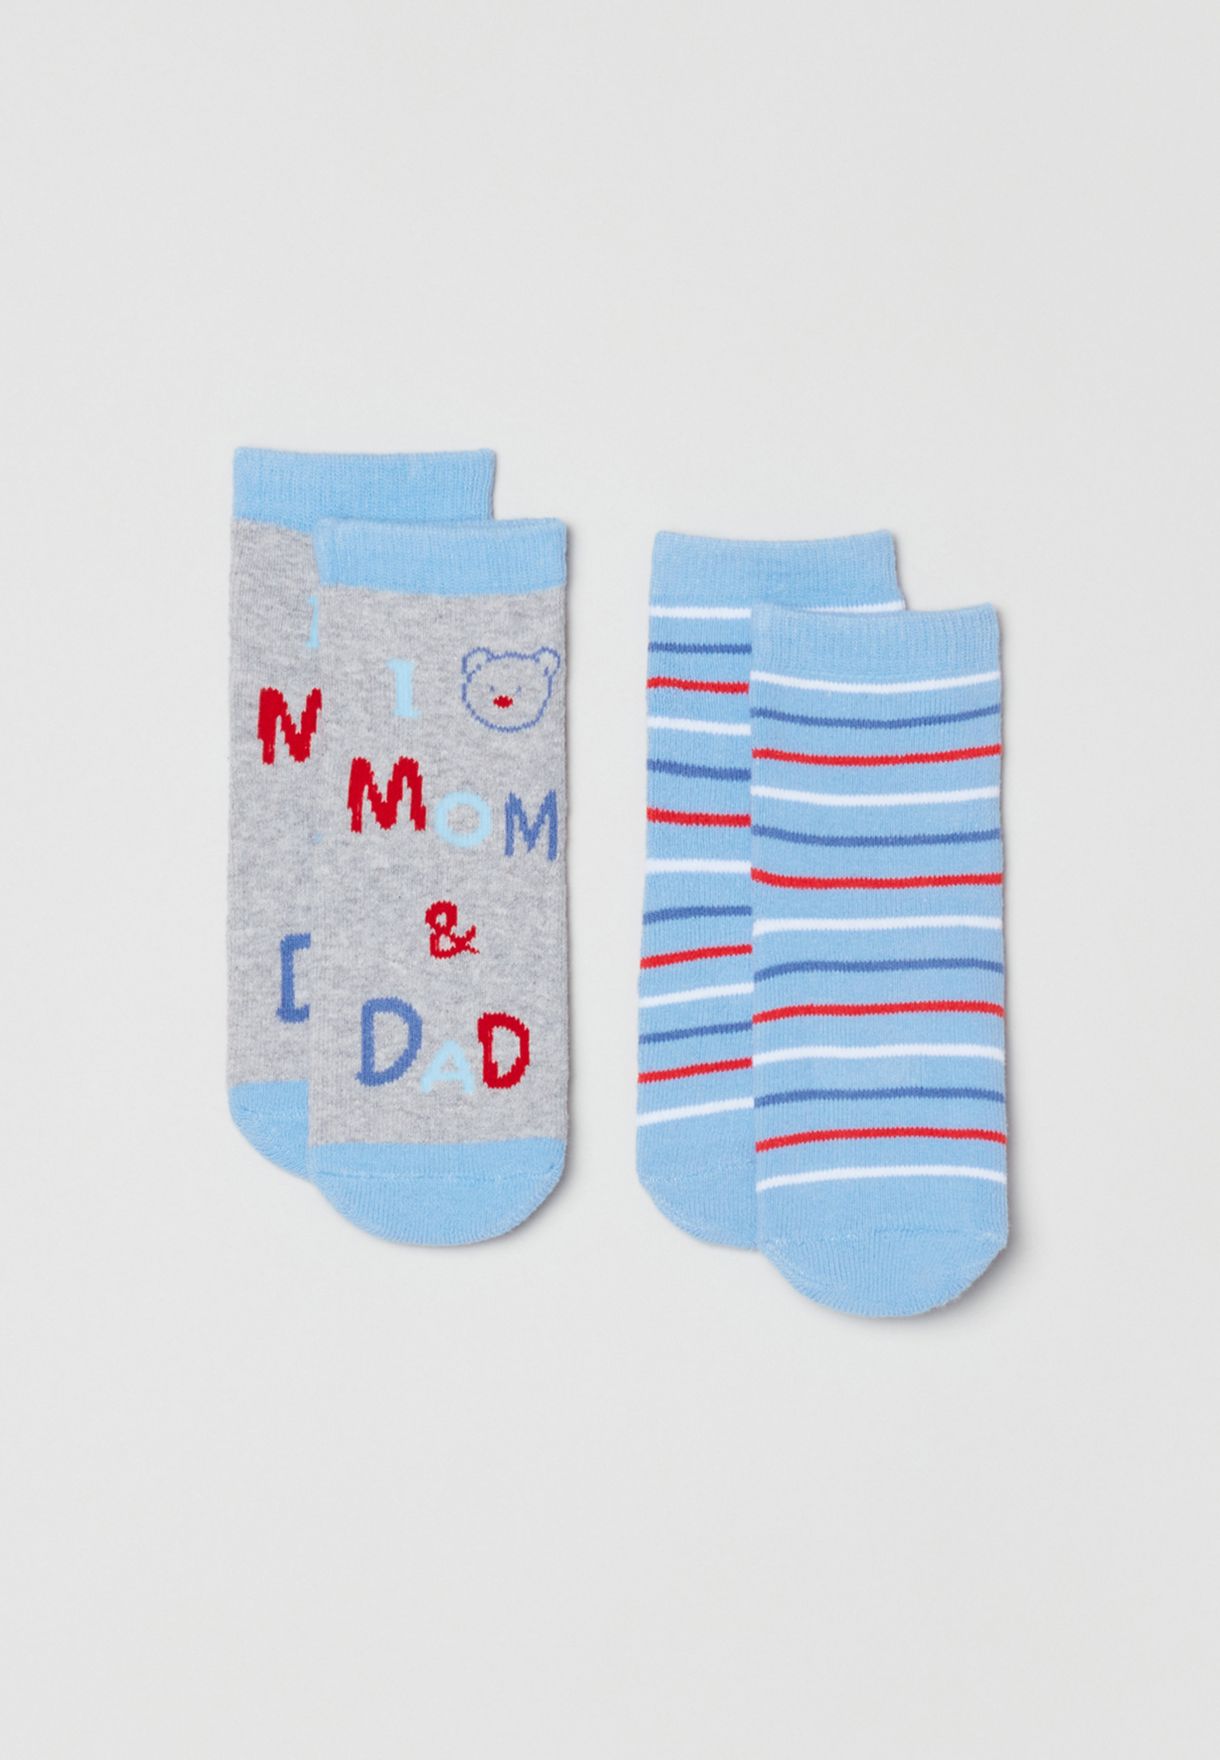 2 Packs Printed Slipper Socks